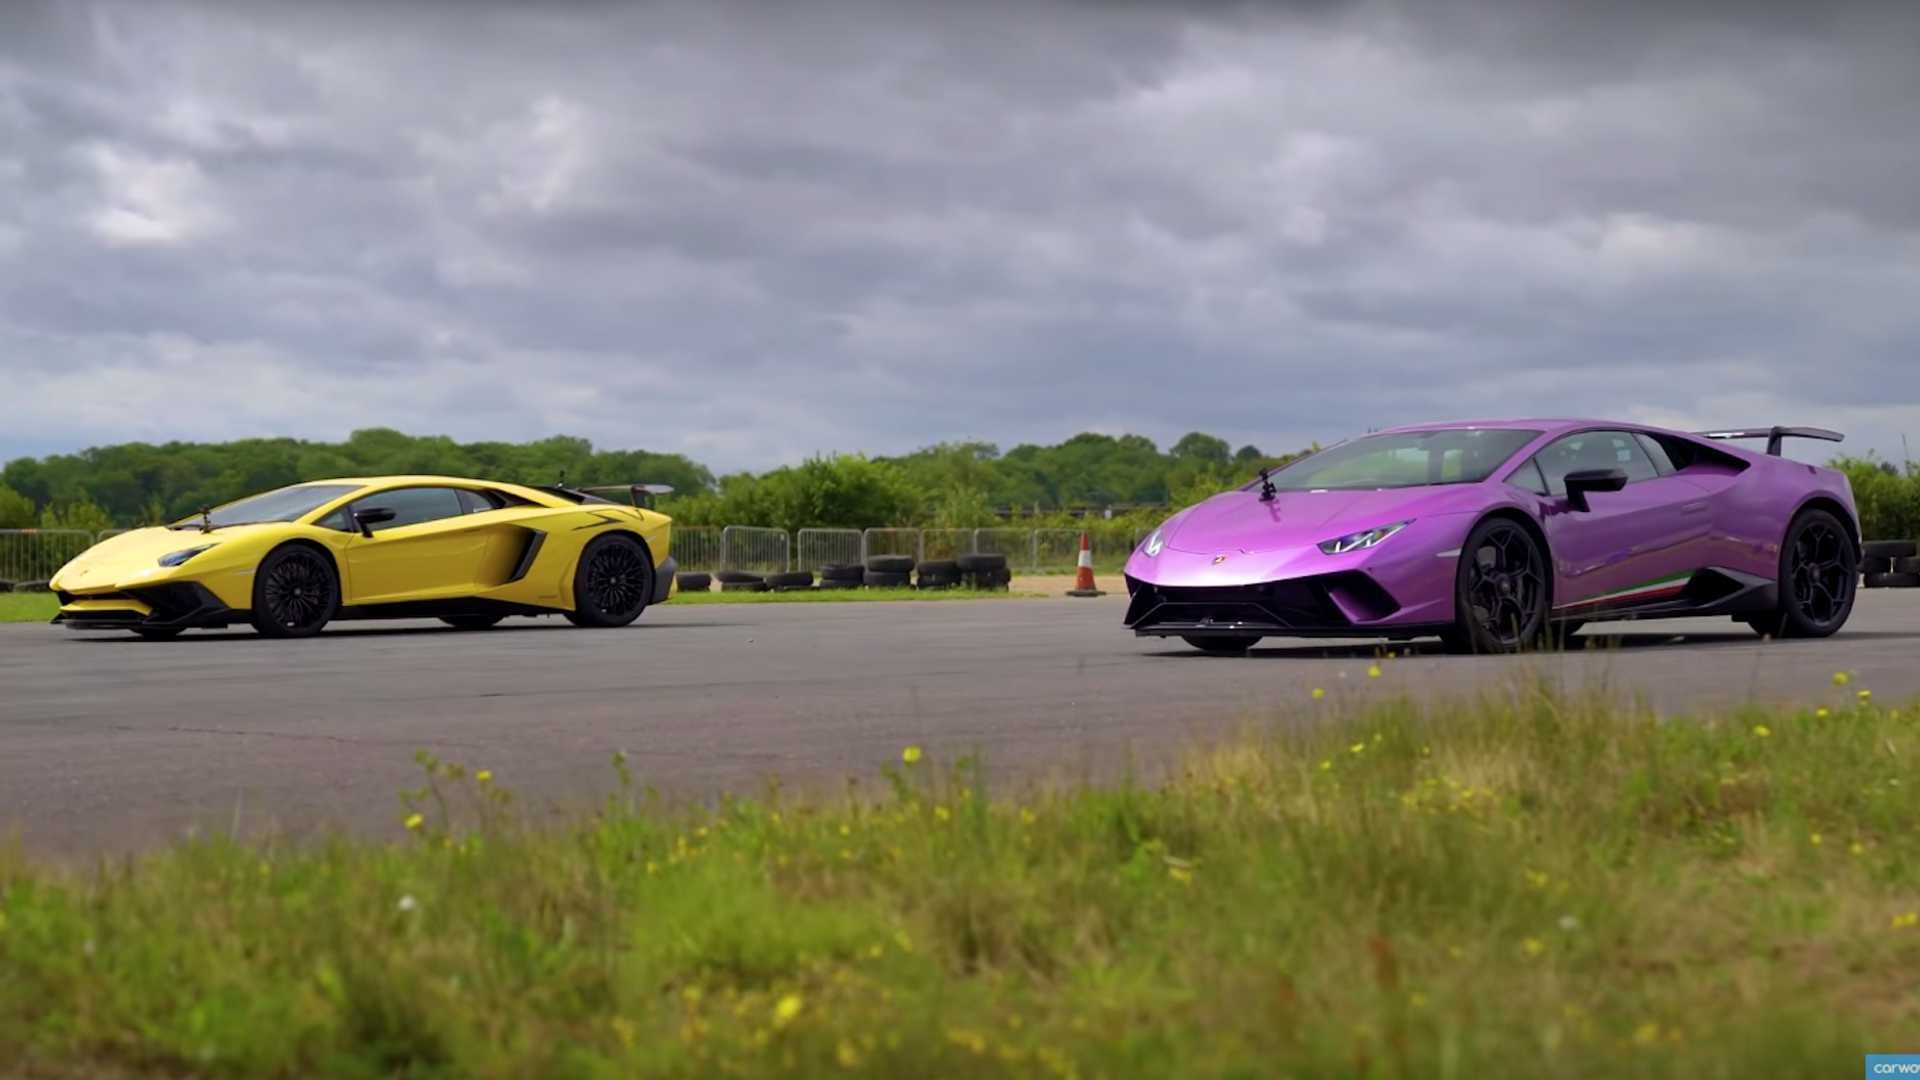 Lamborghini Aventador SV vs. Huracán Performante, ¿quién ganará?